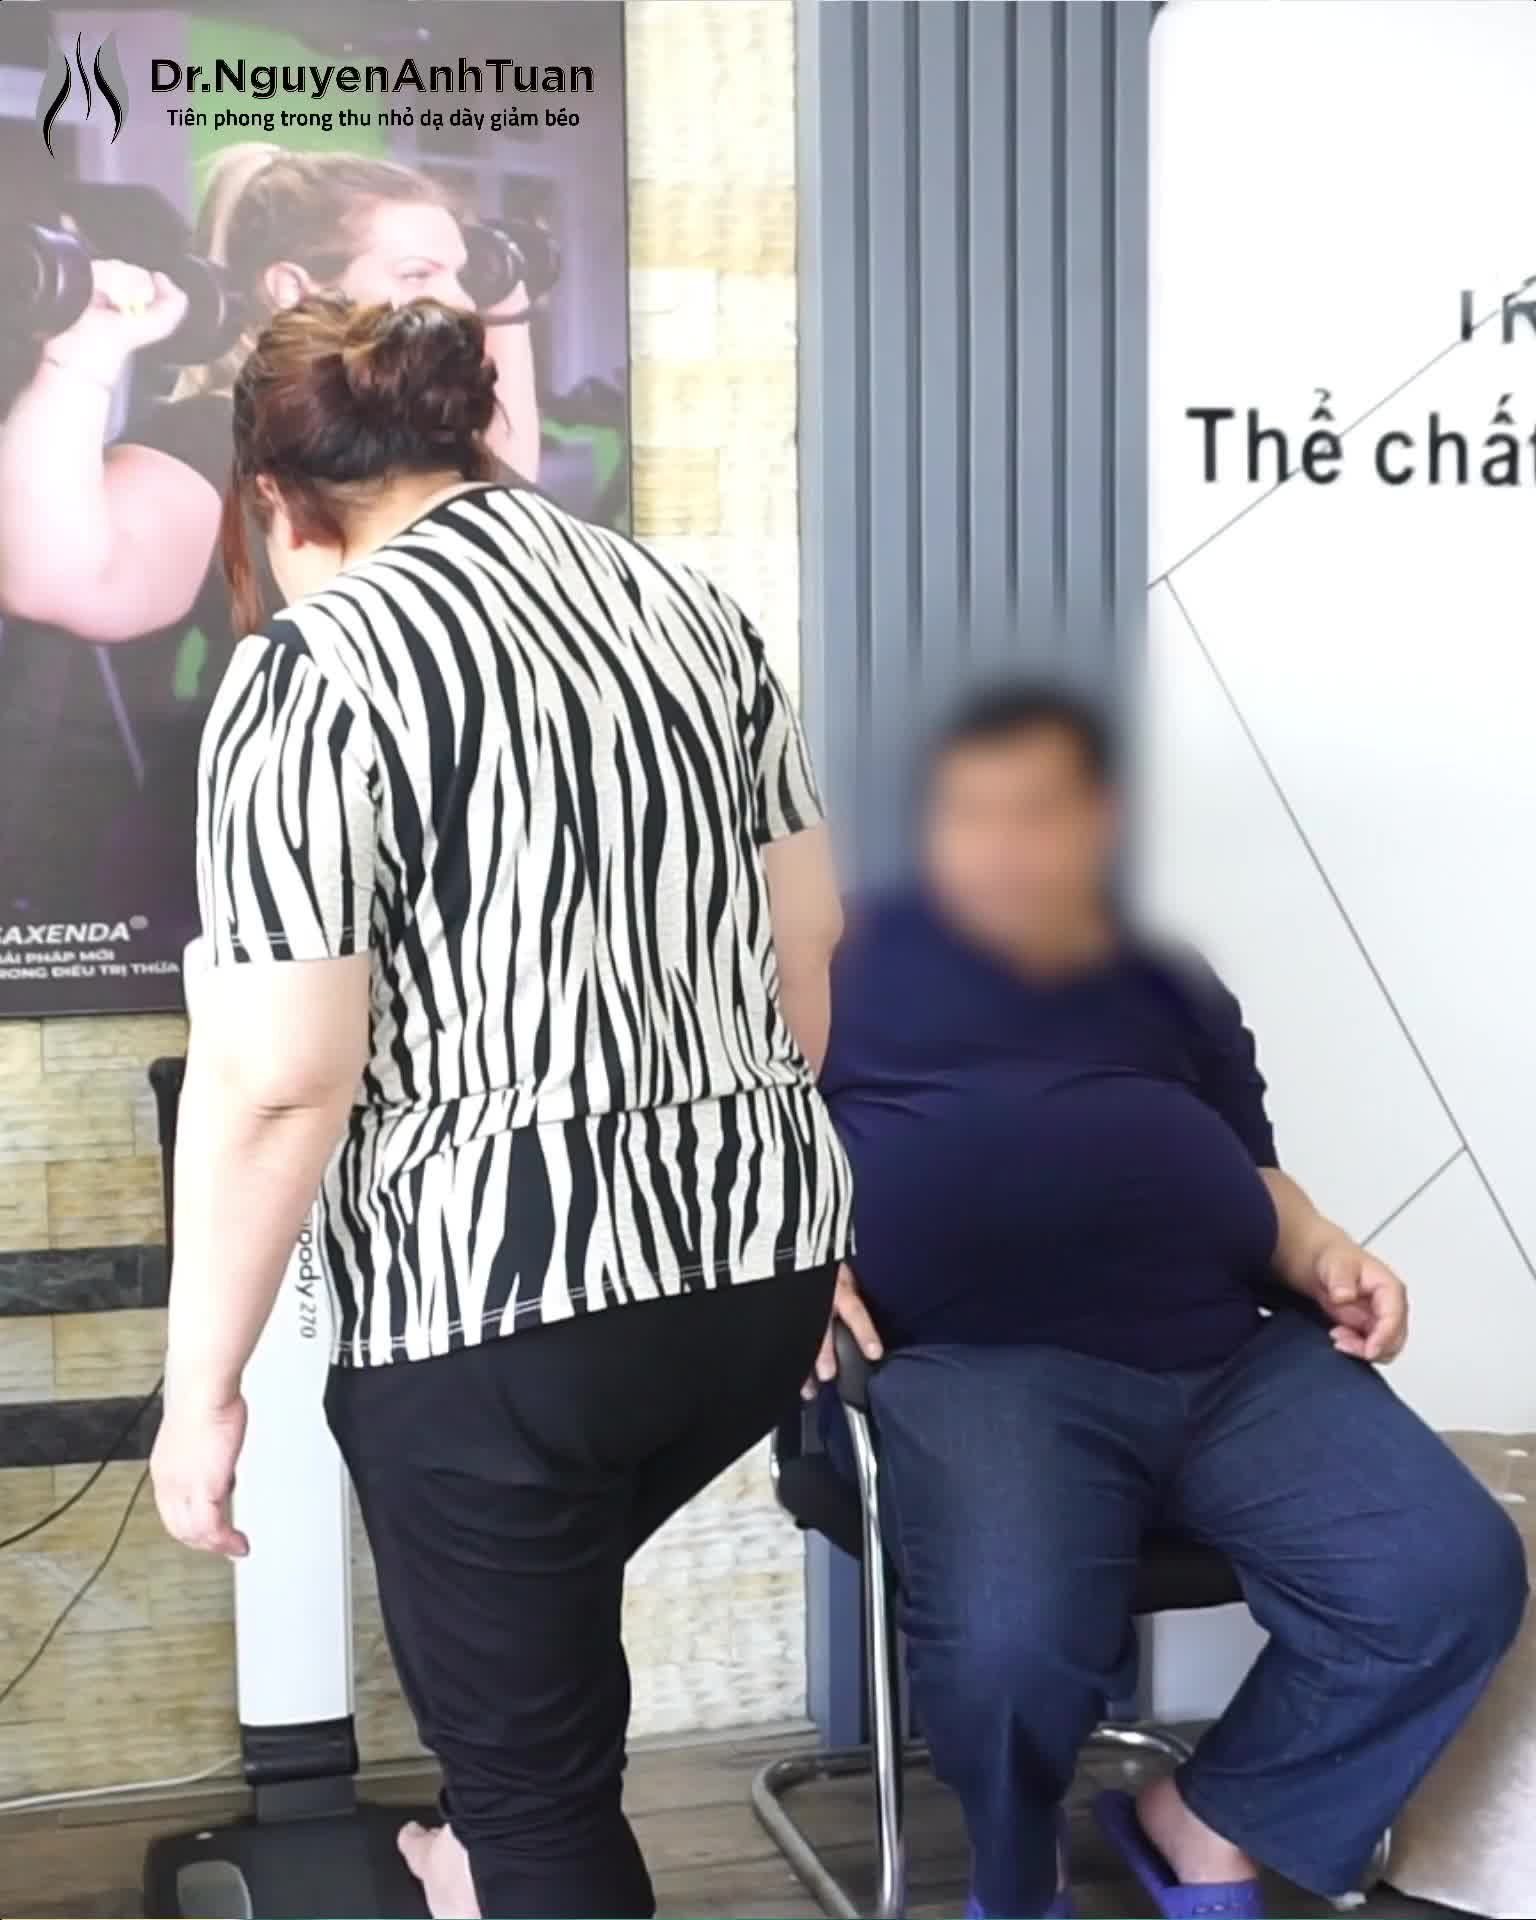 Hành trình giảm cân của nam bệnh nhân nặng 108kg sau 1 tháng giảm 19kg.